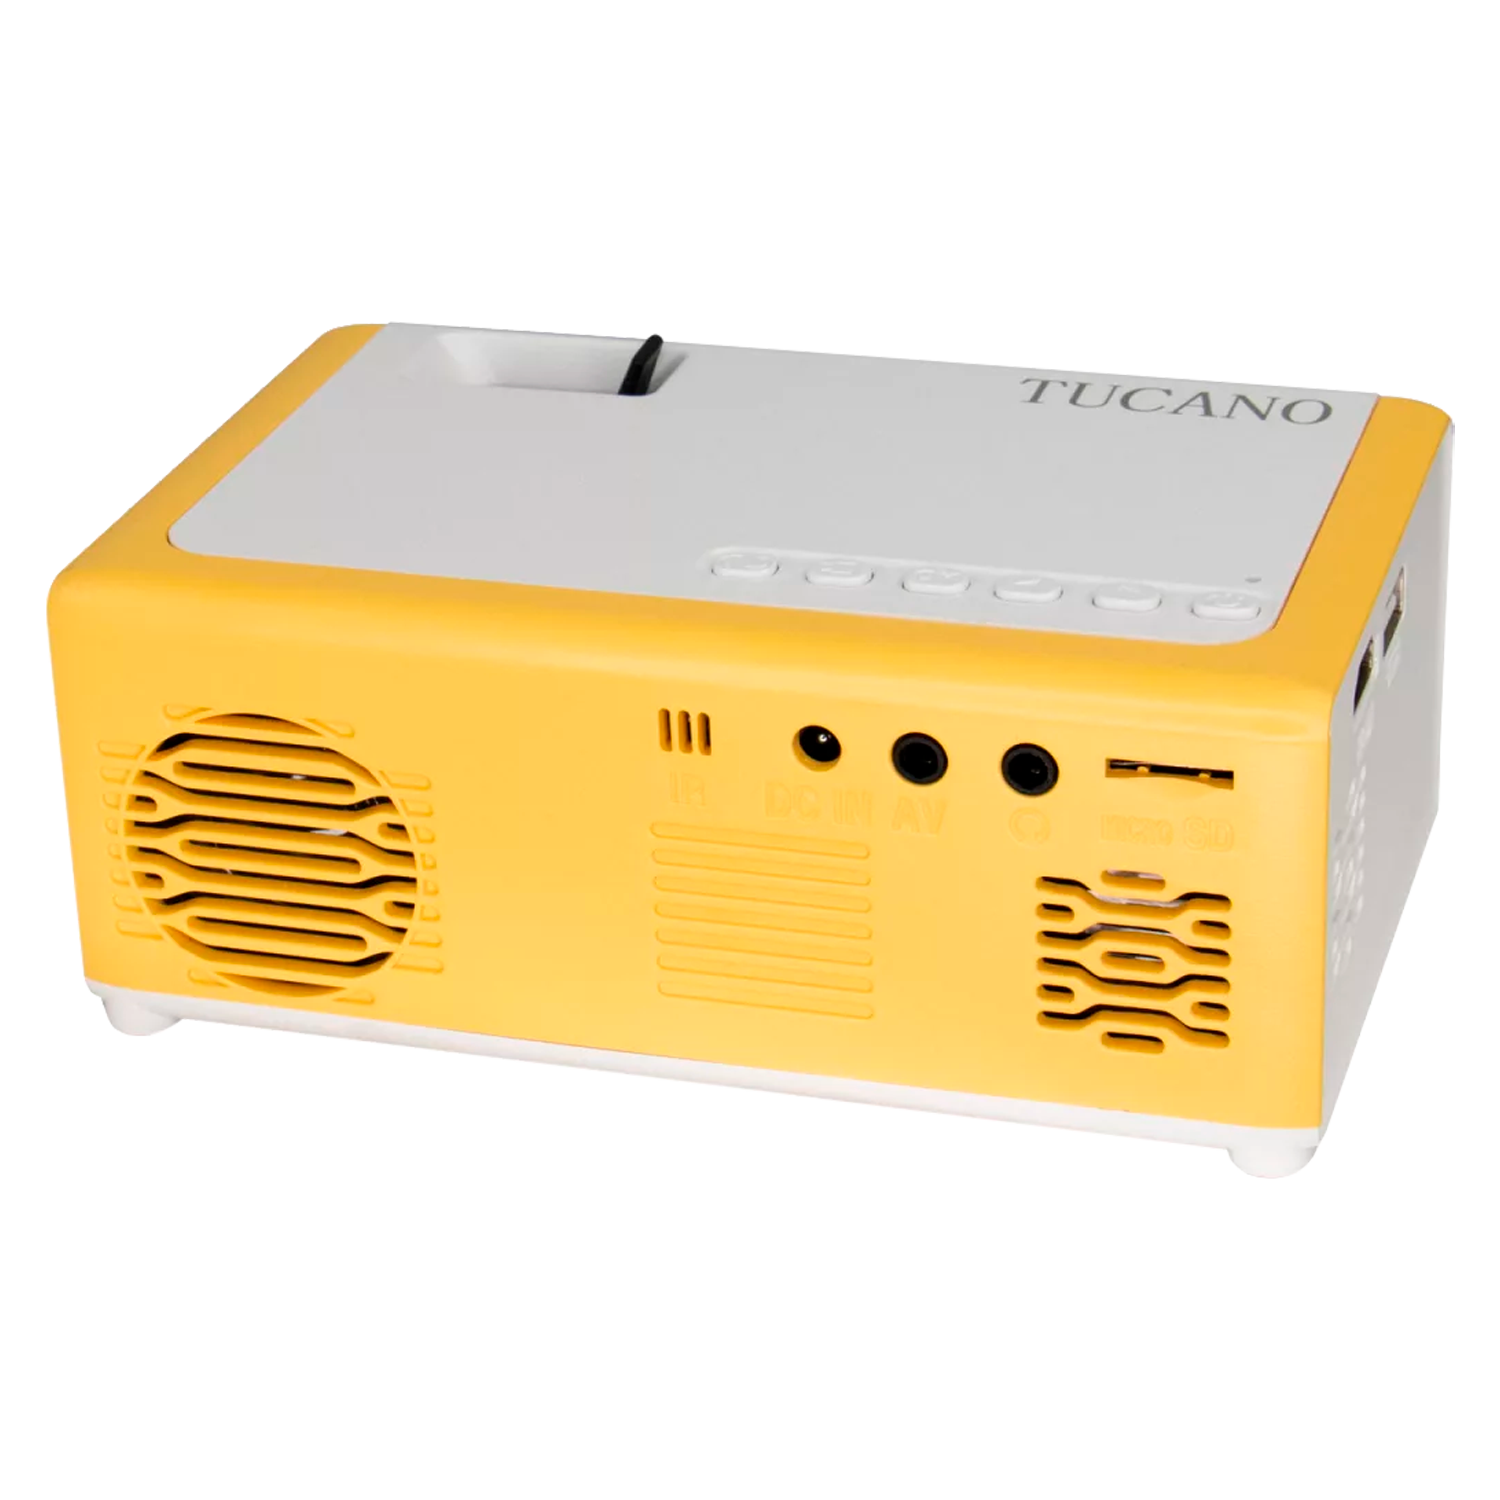 Projetor Tucano M1 1080P / Full HD / HDMI / VGA / USB - Branco e Amarelo